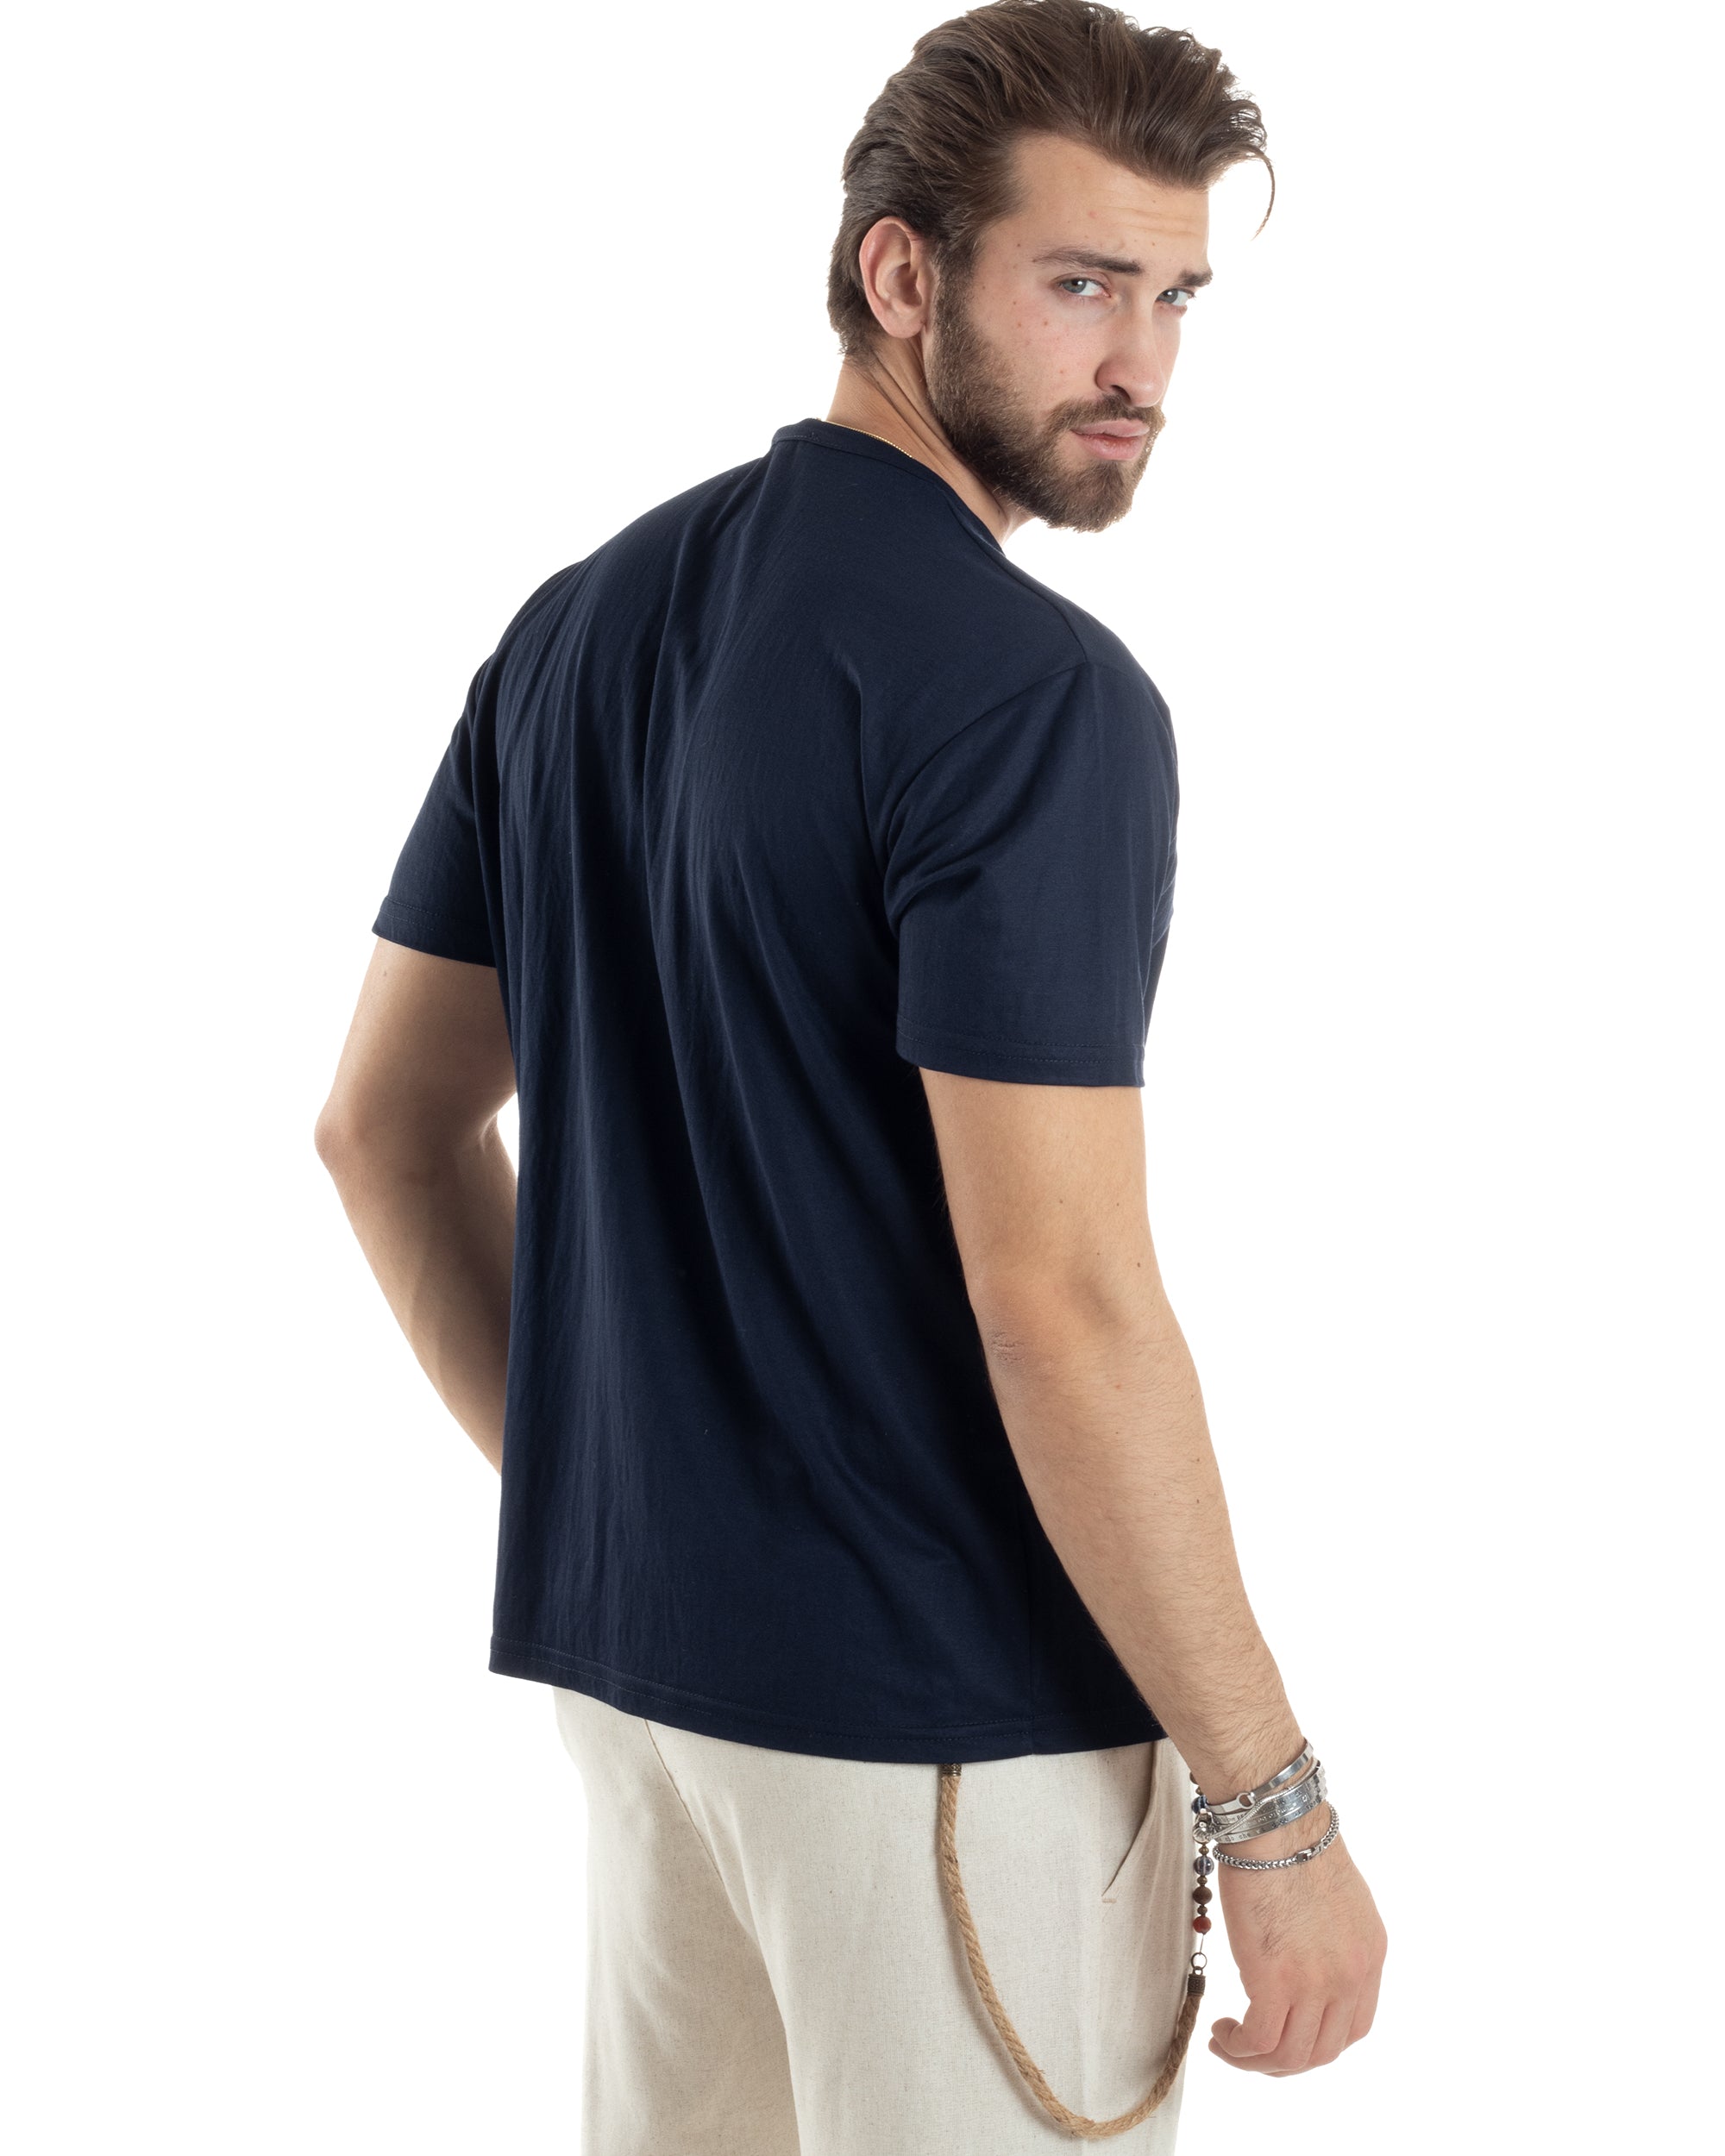 T-shirt Uomo Manica Corta Viscosa Collo Serafino Maglia Con Bottoni Casual Blu GIOSAL-TS3039A